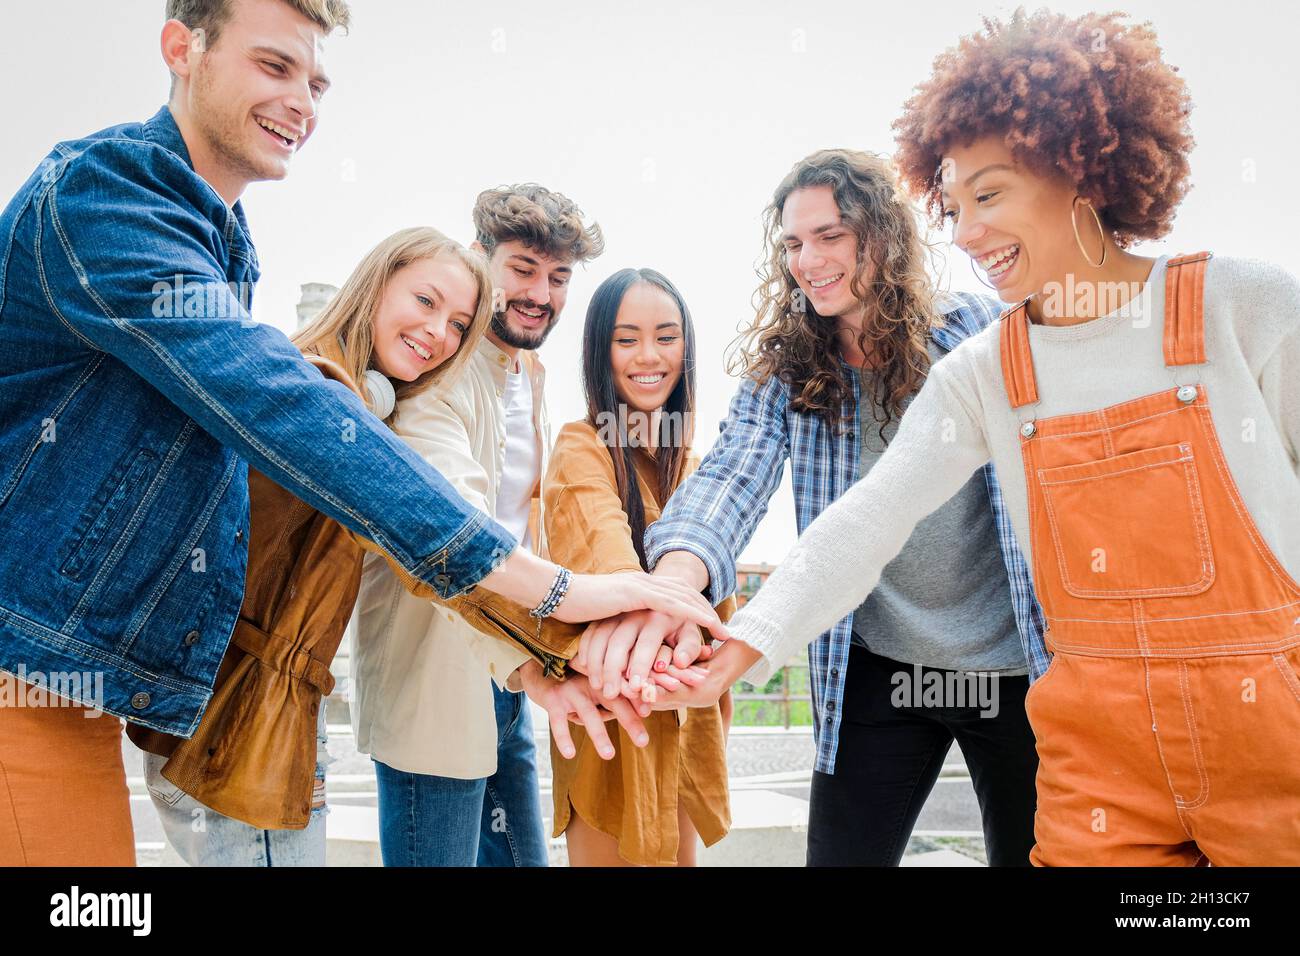 Ritratto di felici amici universitari che si accatastano le mani, mostrando unità e convivenza - studenti di cultura diversi che celebrano insieme - amici Foto Stock